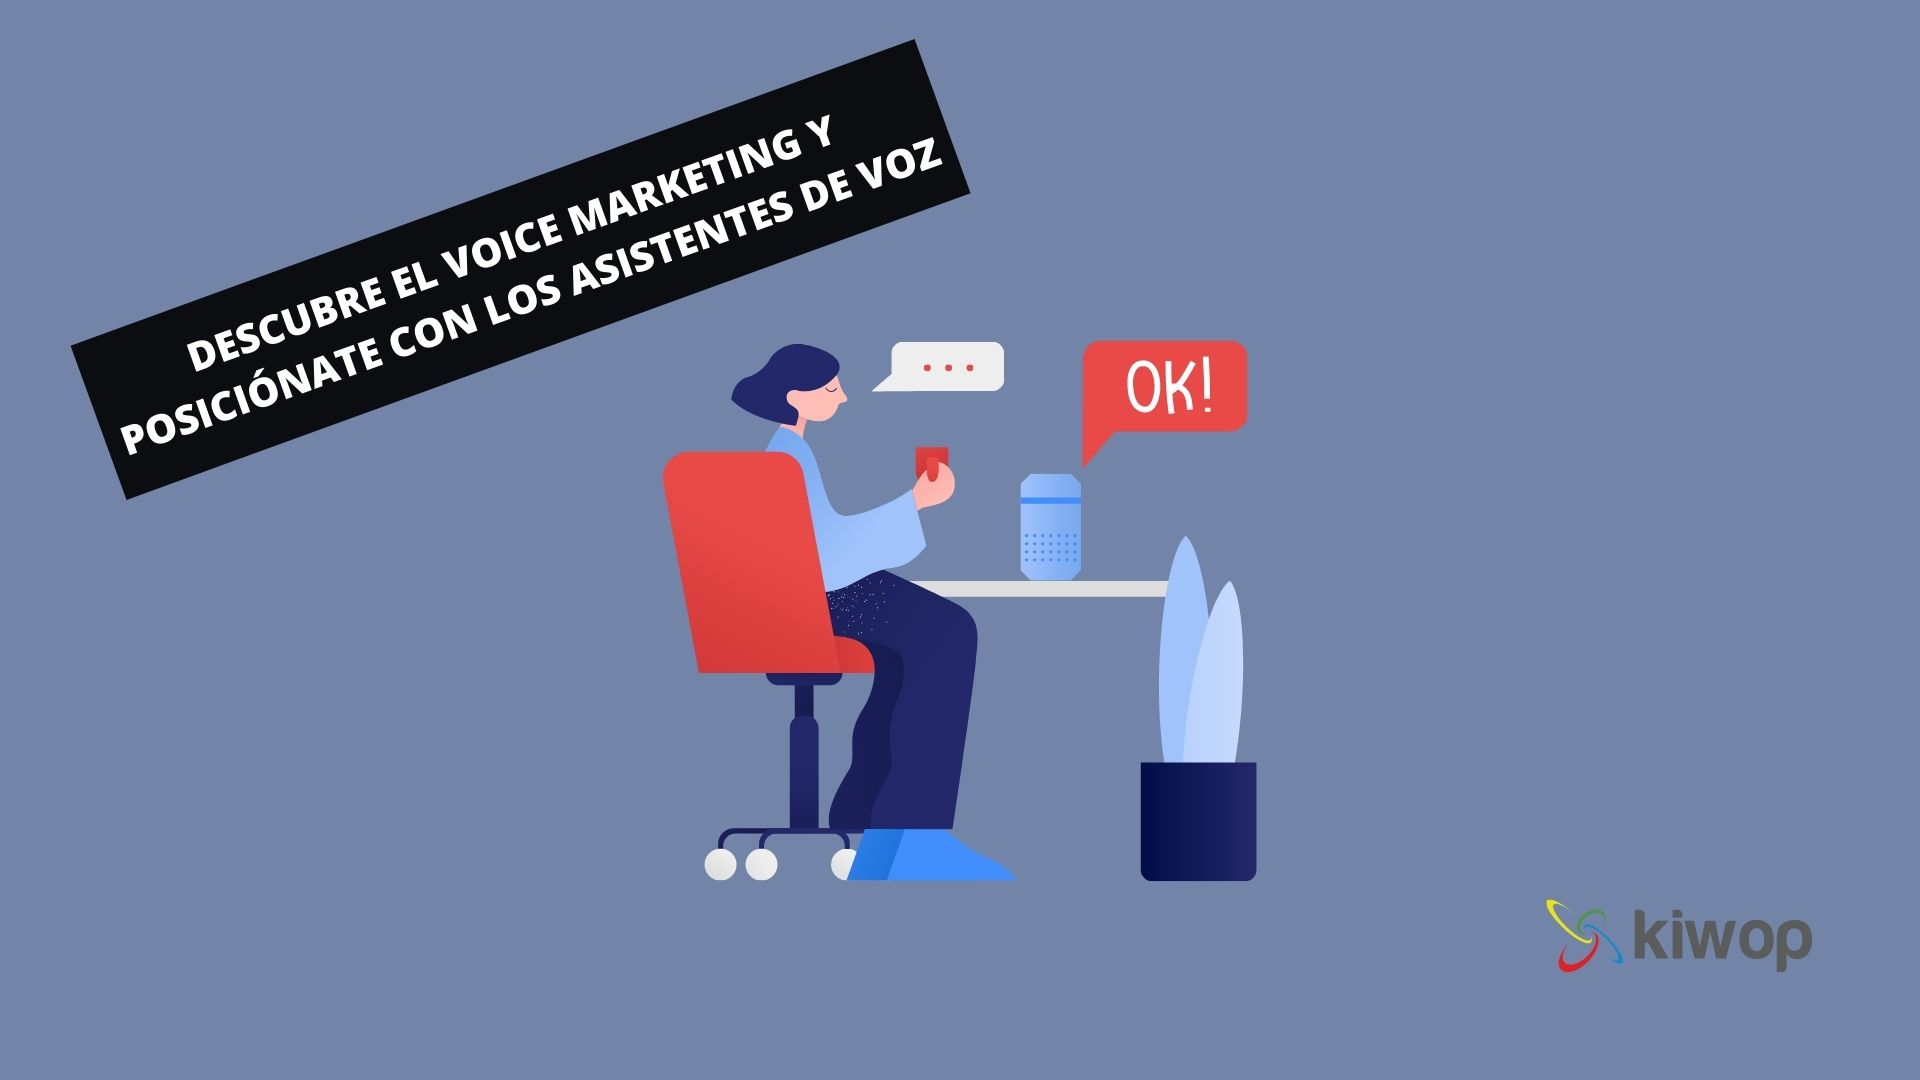 Descobreix el voice marketing i posiciona’t amb els assistents de veu